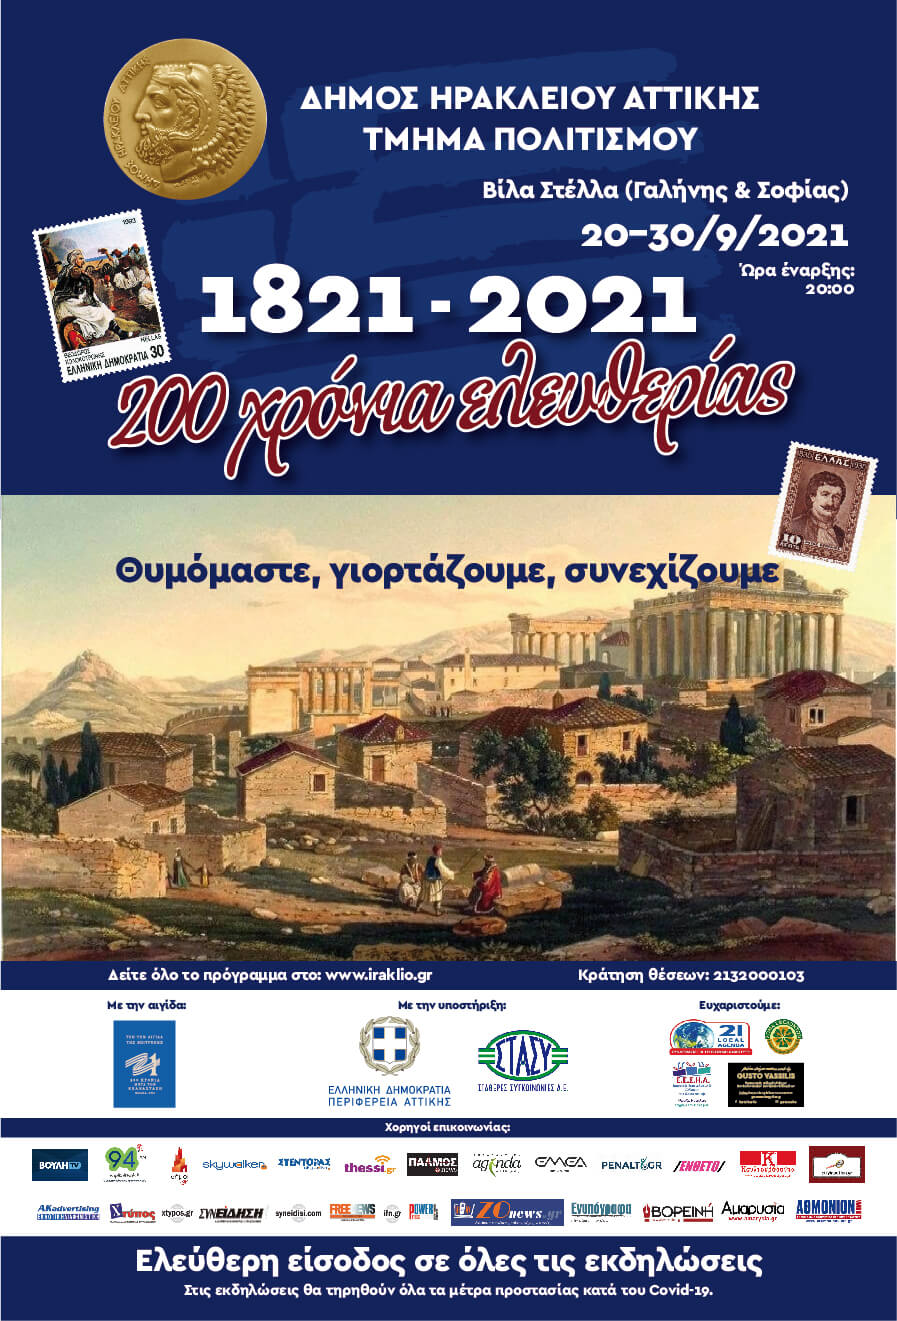 Πολιτιστικό φθινόπωρο αφιερωμένο στα 200 χρόνια της Ελληνικής Επανάστασης από τον Δήμο Ηρακλείου Αττικής